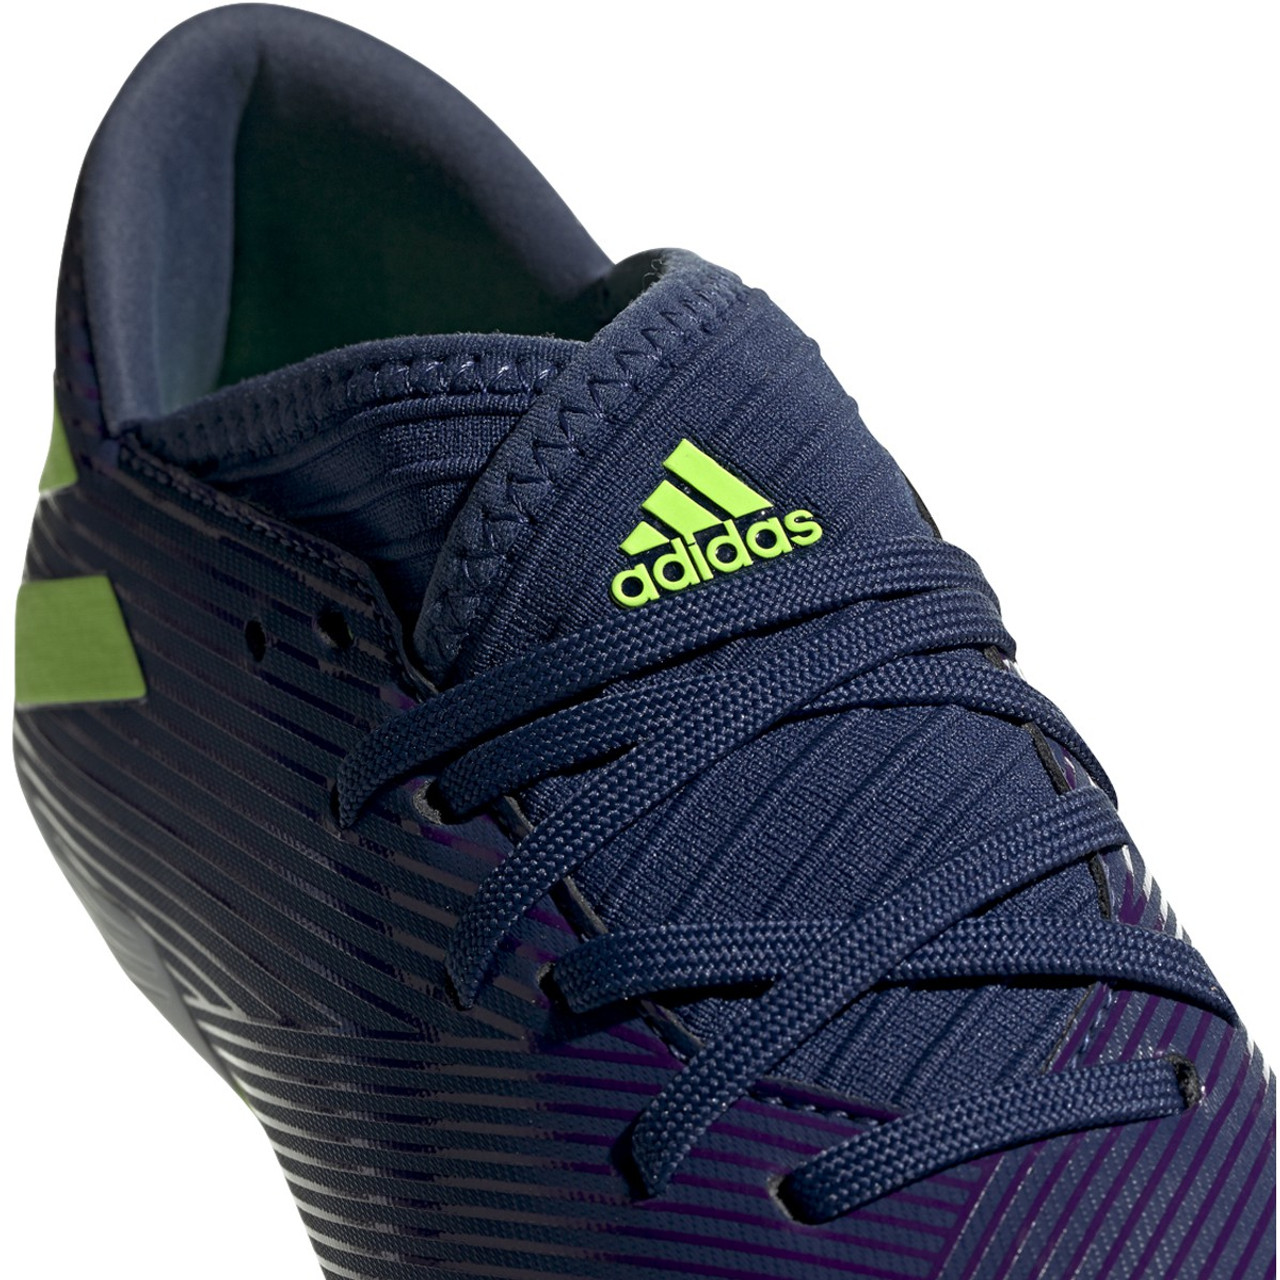 Adidas Nemeziz Messi 19.3 FG Junior Soccer Cleats EF1814 - Indigo, Green,  Purple - everysportforless.com